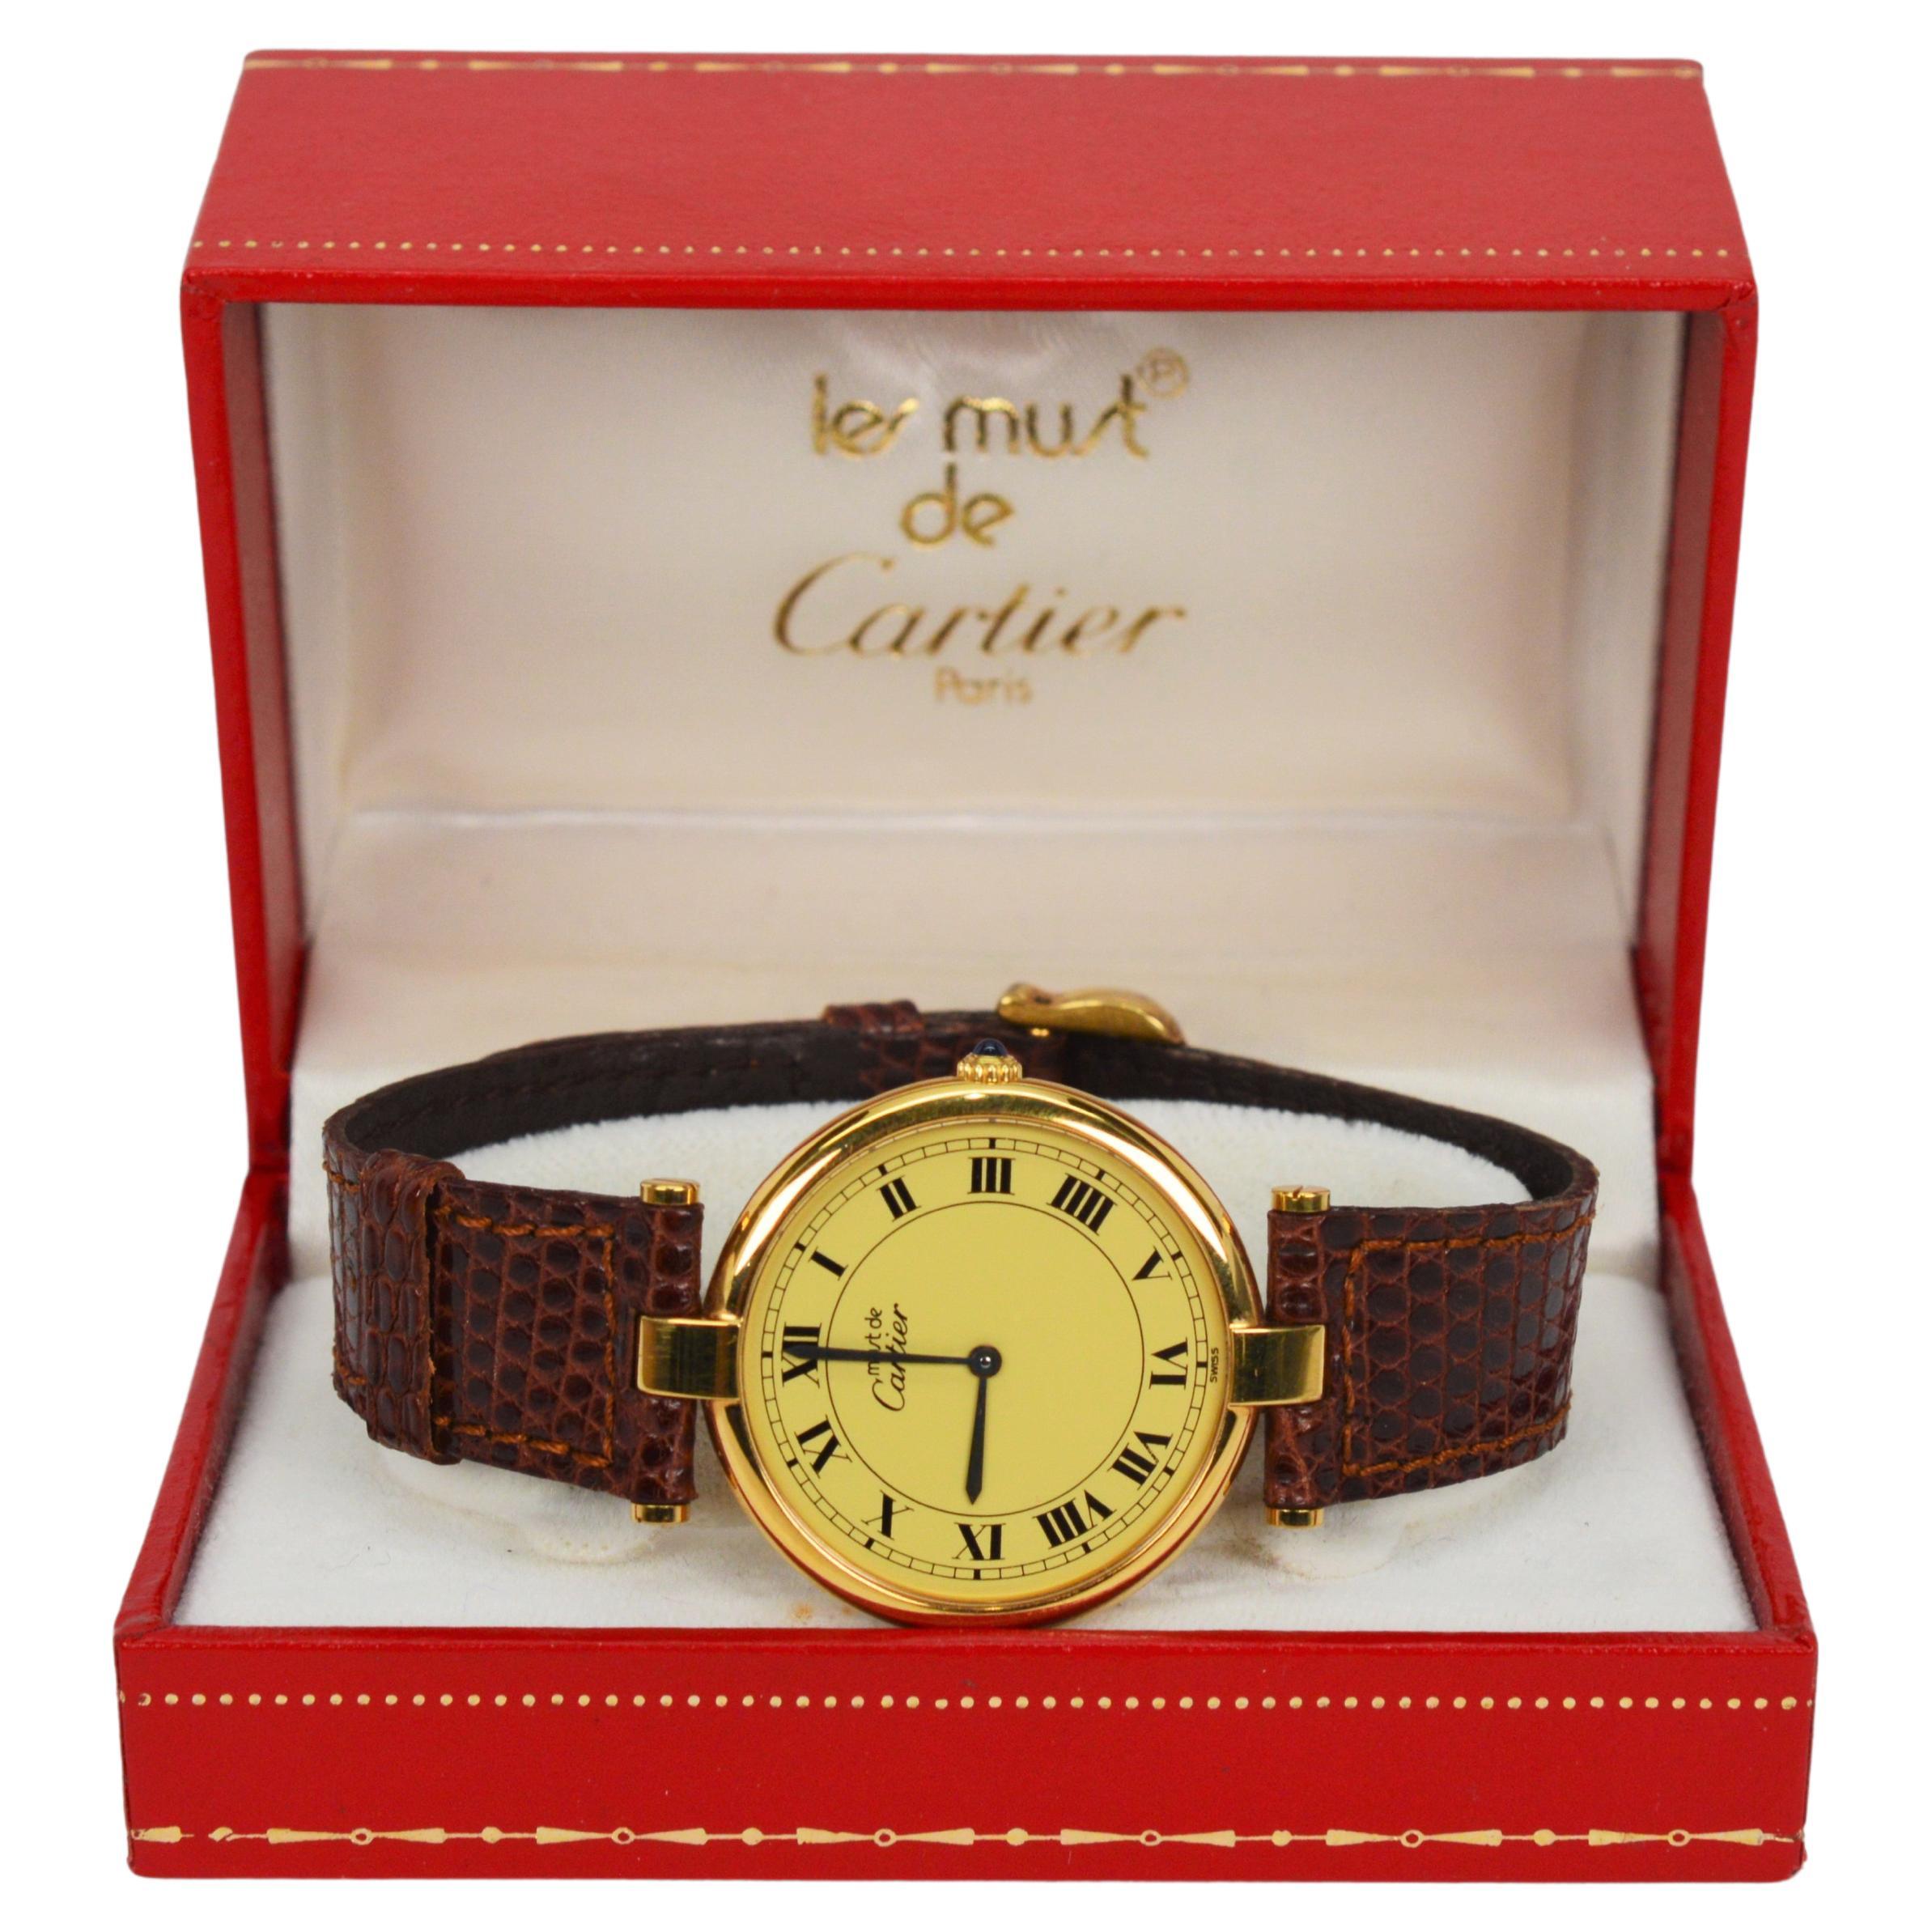 Cartier Must de Cartier Argent Plaque Oro Quartz 30mm Wrist Watch w Box Papers